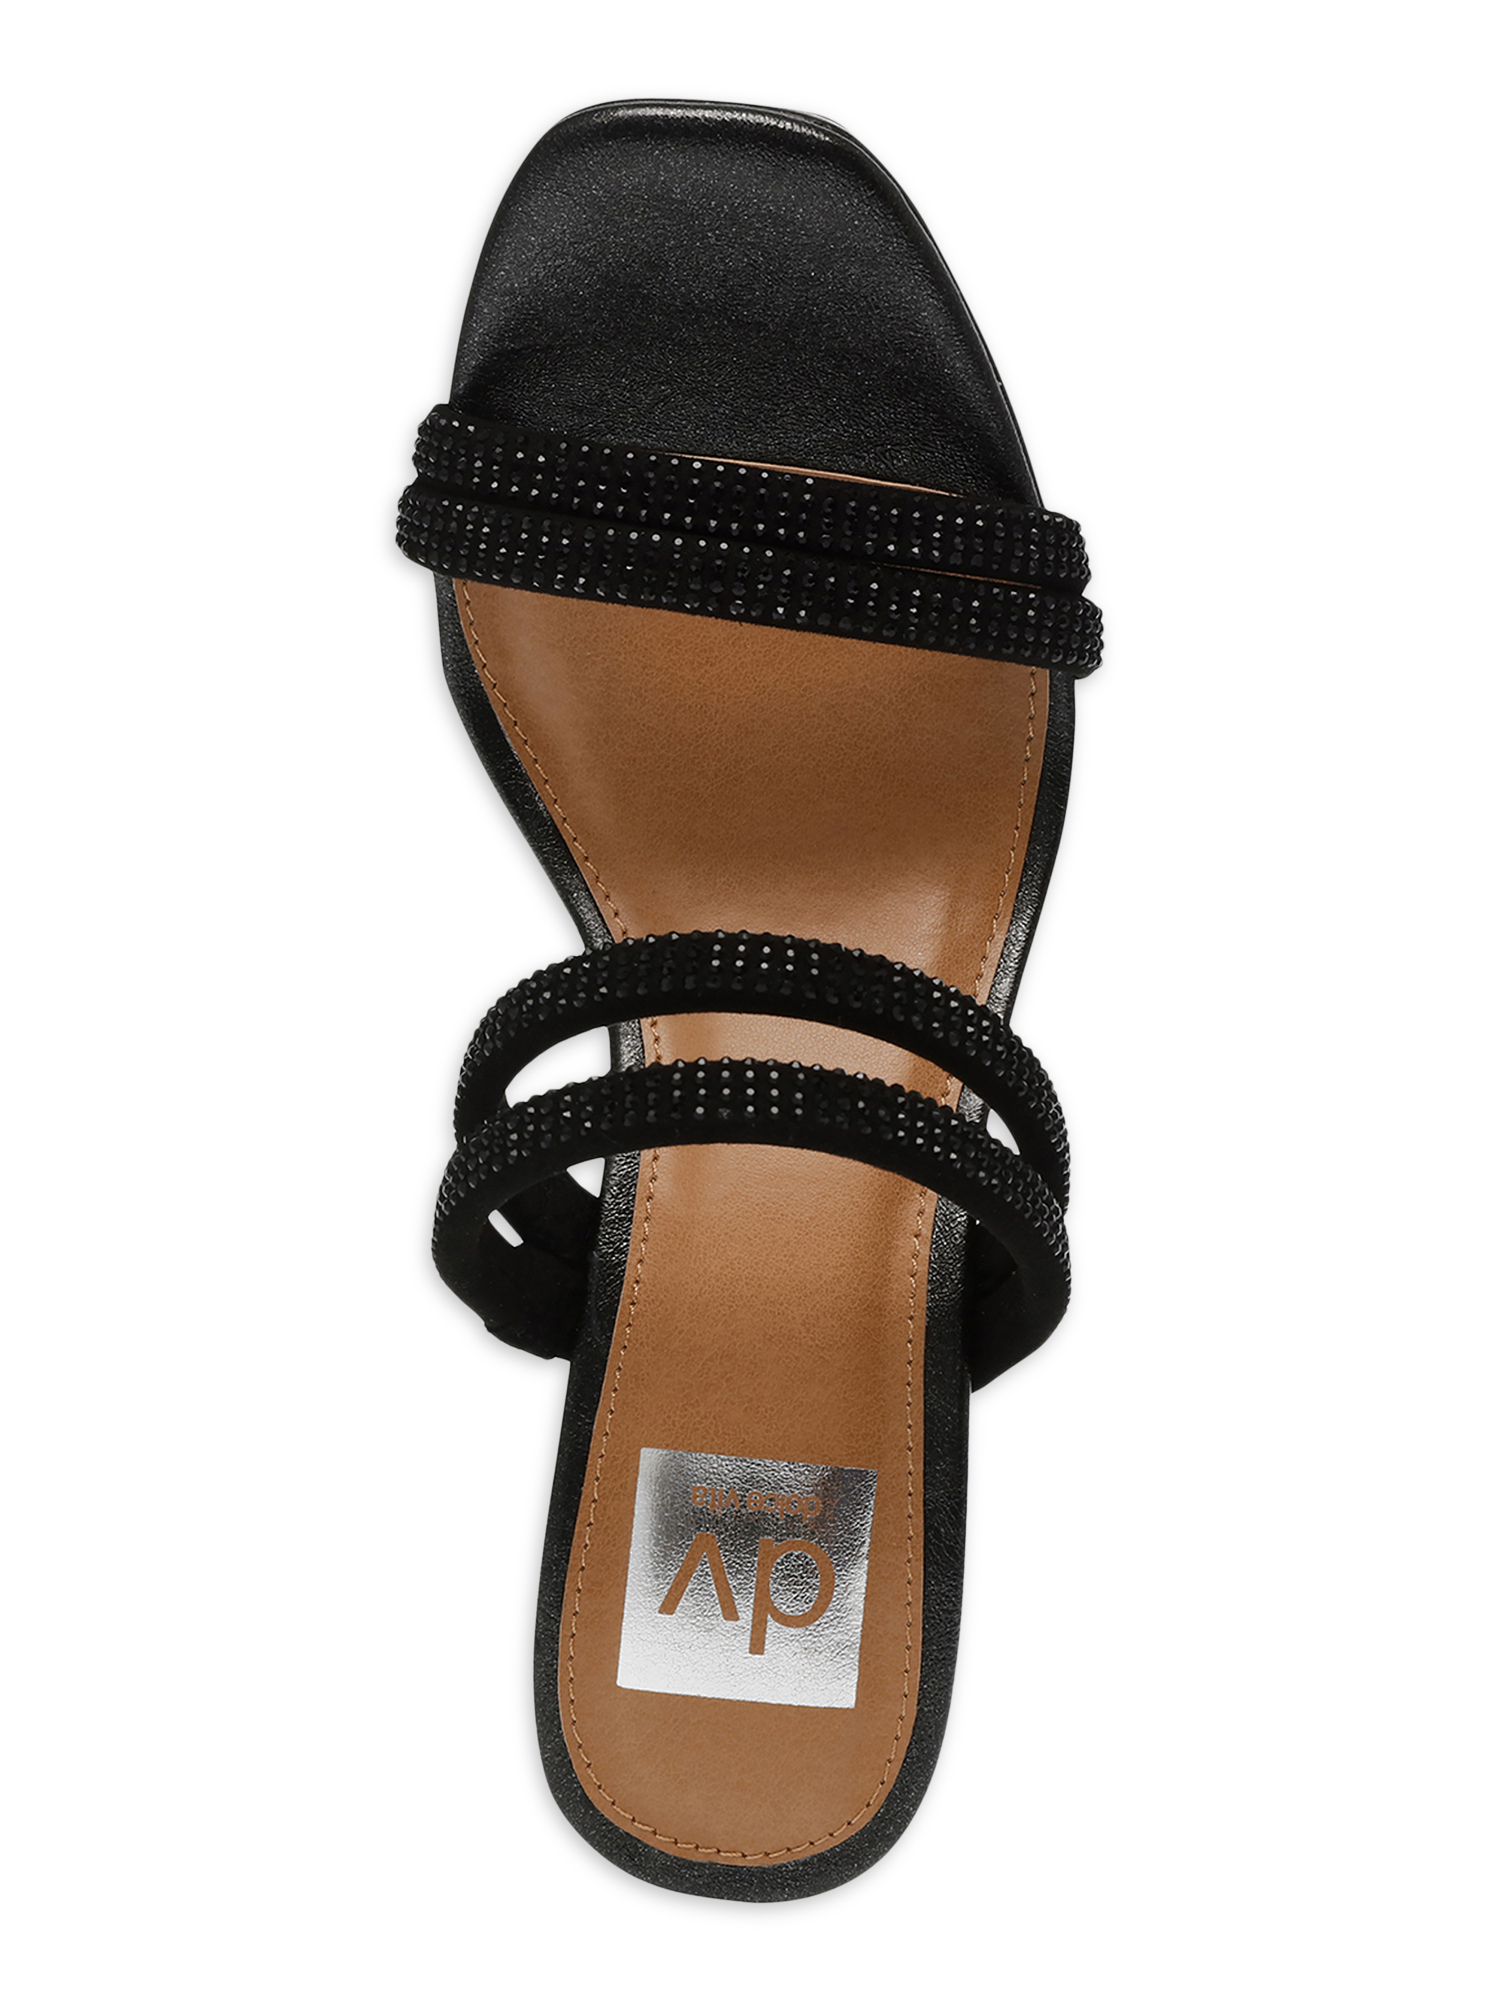 DV Dolce Vita Women's Persia Platform Heeled Sandal - image 4 of 6